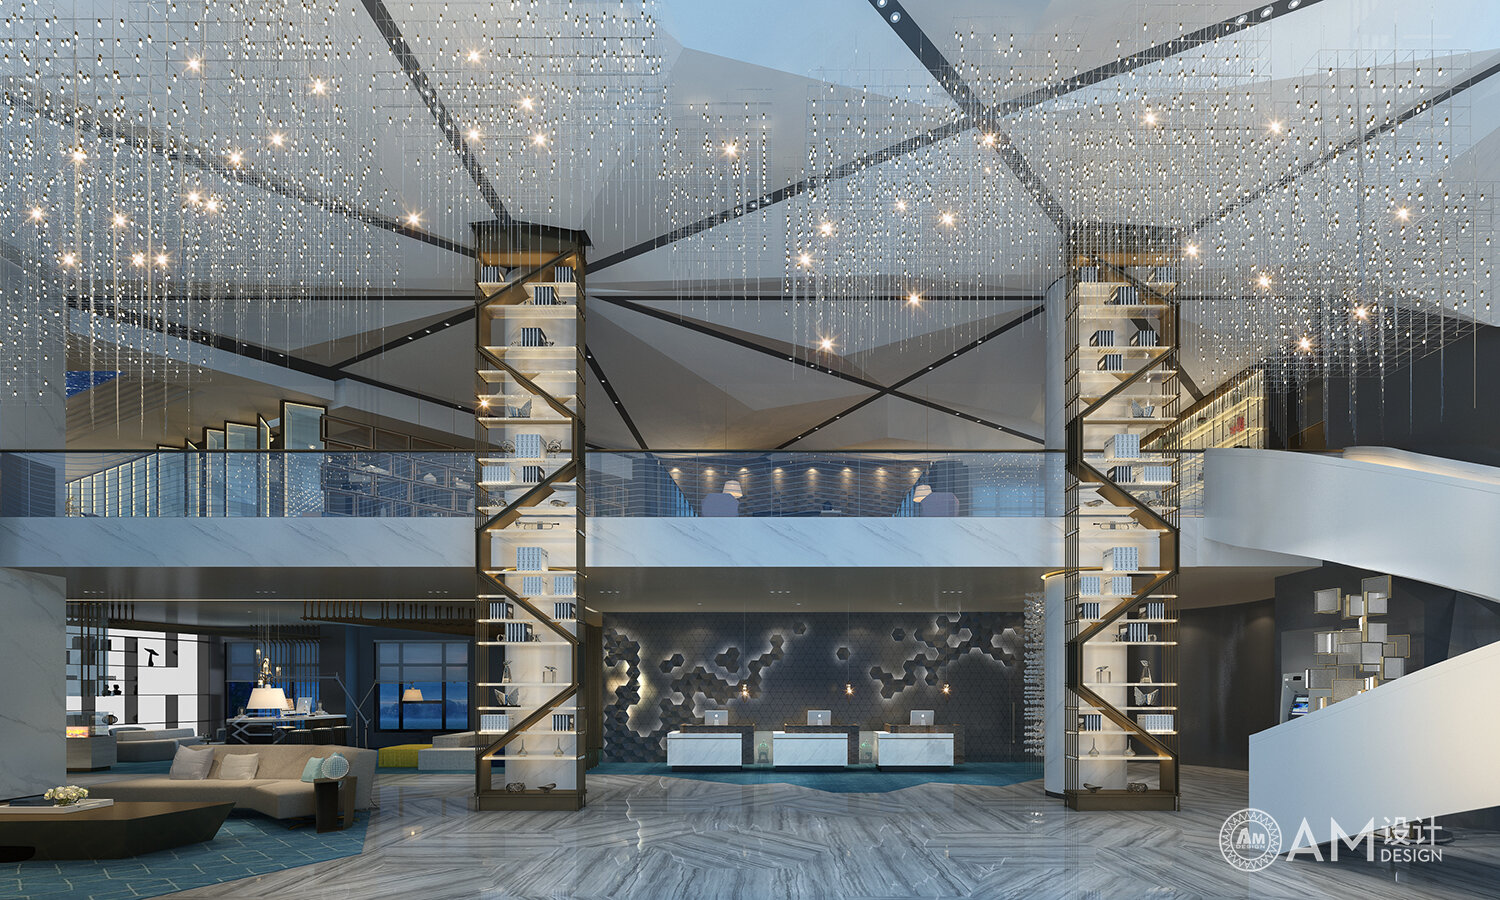 AM DESIGN | Lobby design of Xi'an Jinpan Business Hotel